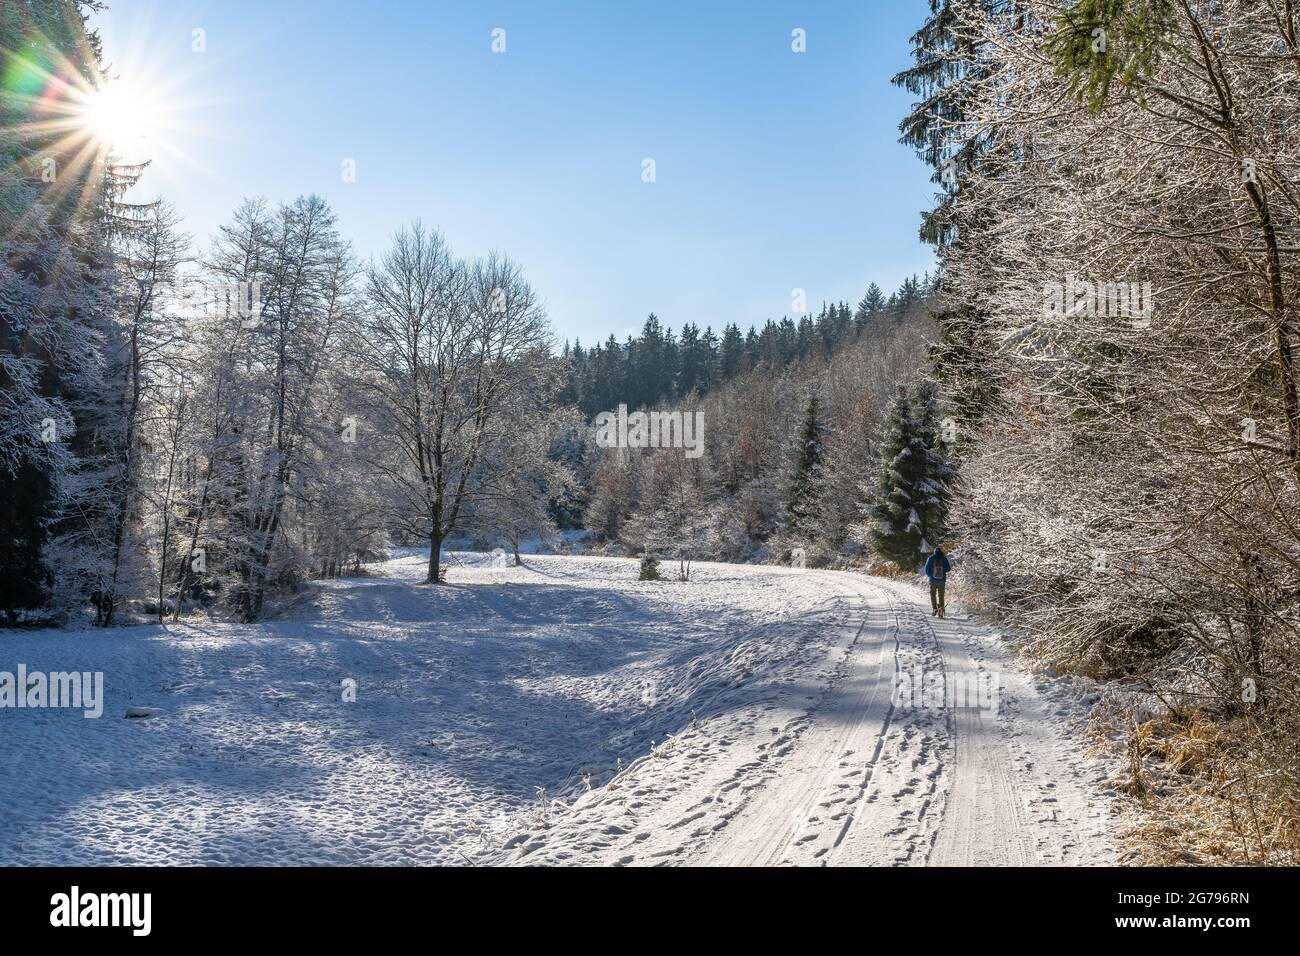 Europe, Germany, Baden-Wuerttemberg, Schönbuch Region, Schönbuch Nature Park, hikers in the sunny Goldersbachtal in winter Stock Photo